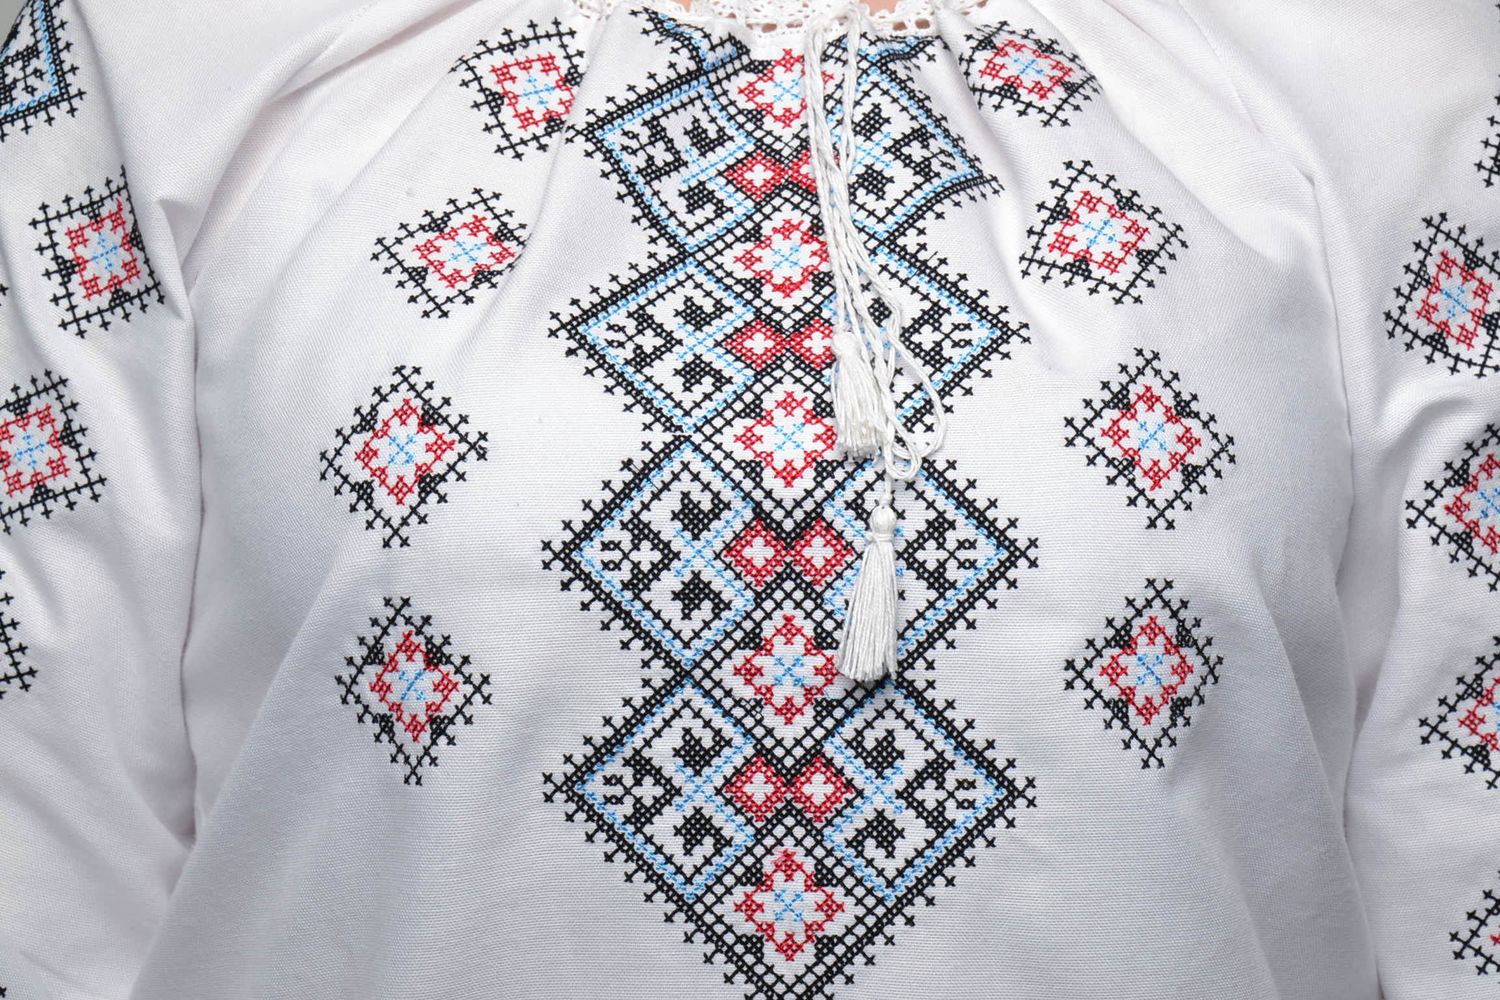 Women's cross stitched shirt photo 3